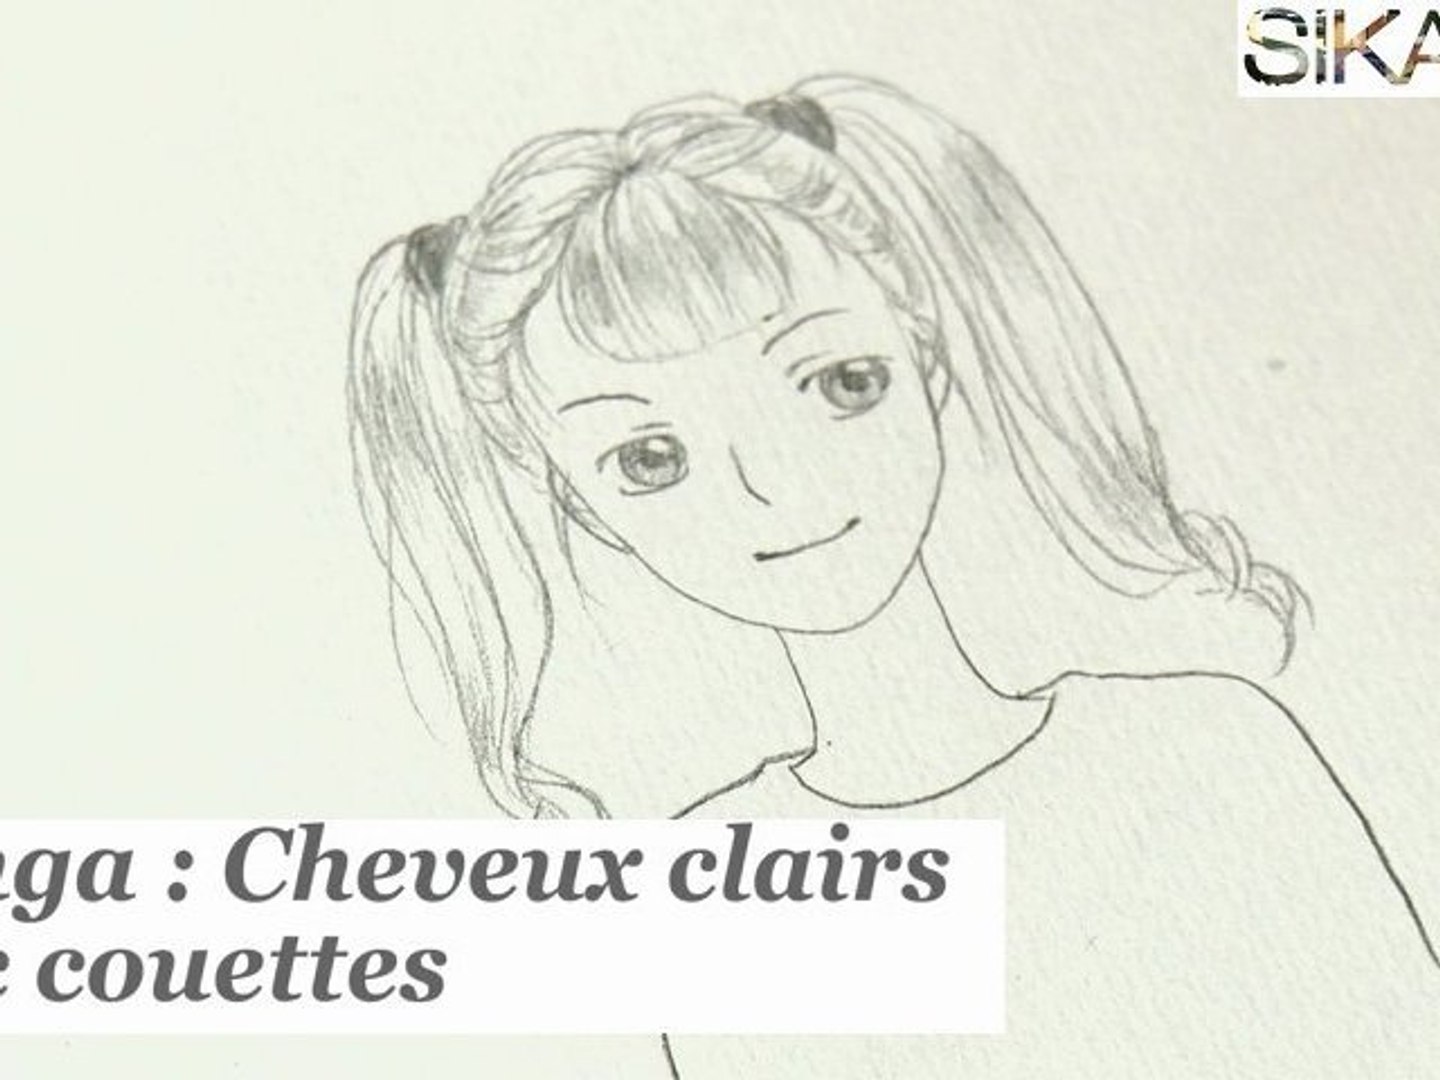 Manga : Comment dessiner une fille avec des couettes ? - HD